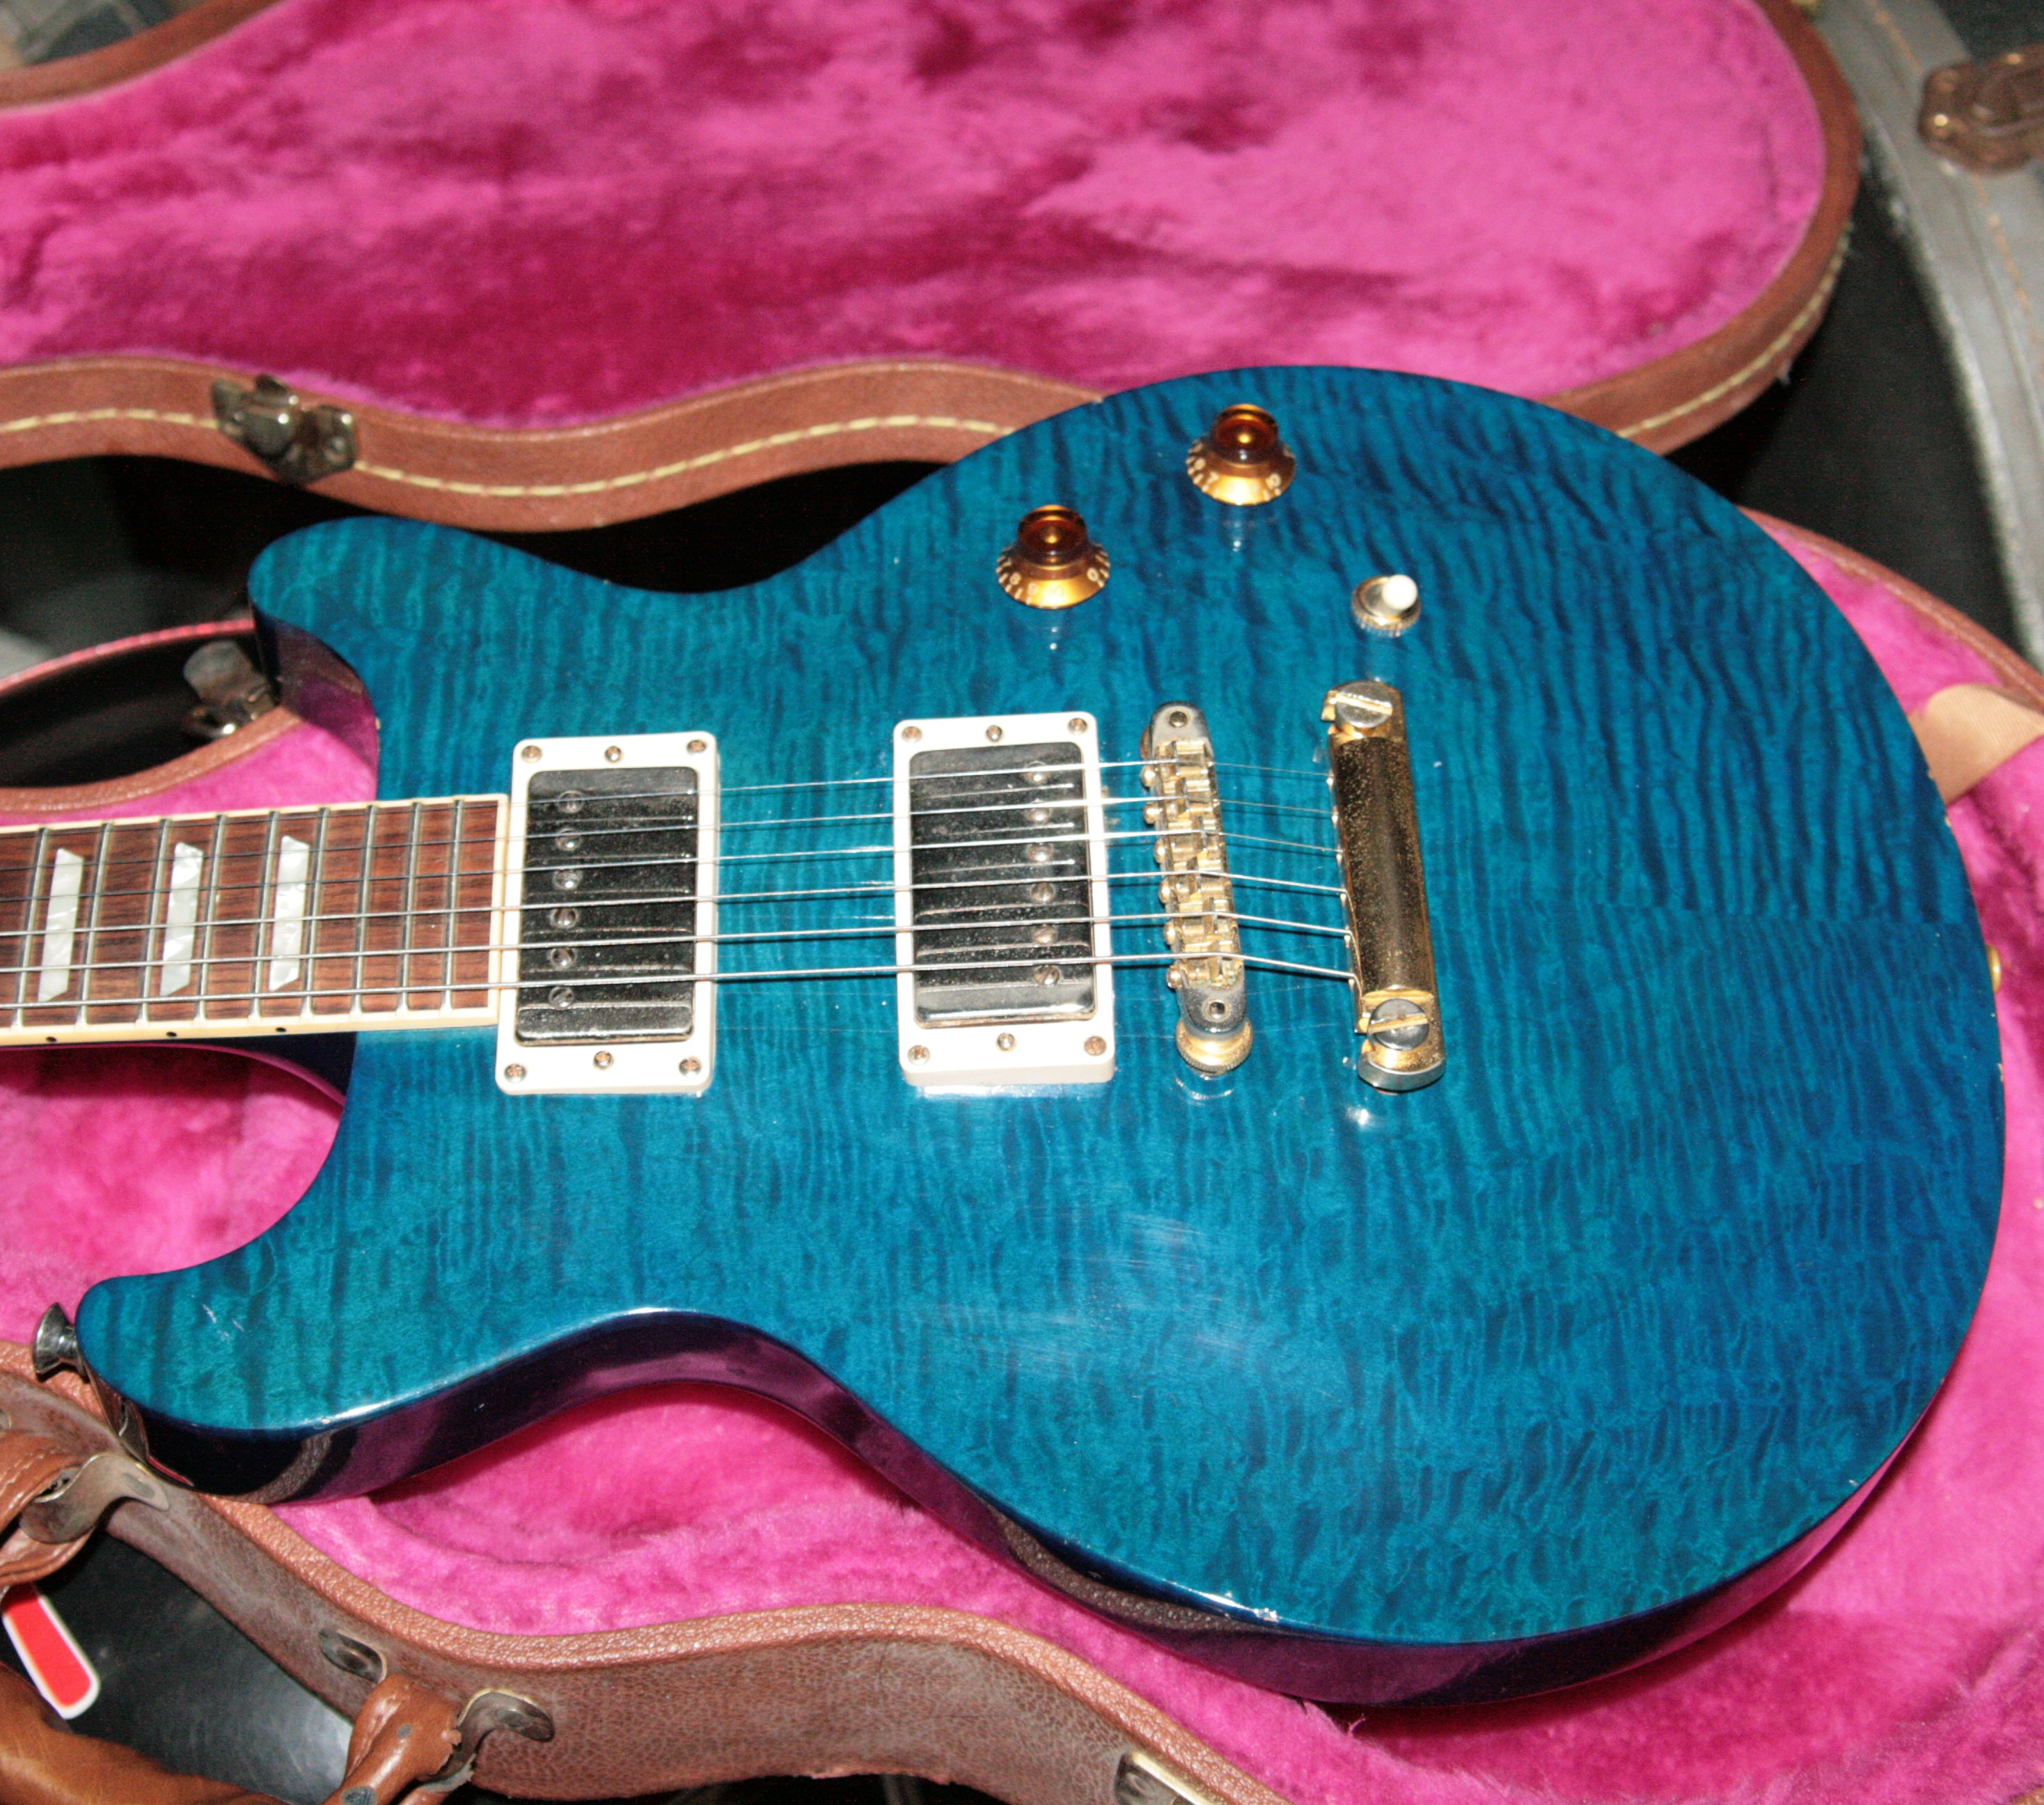 *SOLD*  1998 Gibson Les Paul Standard Plus DC Teal Blue! Double Cut LP! Flametop